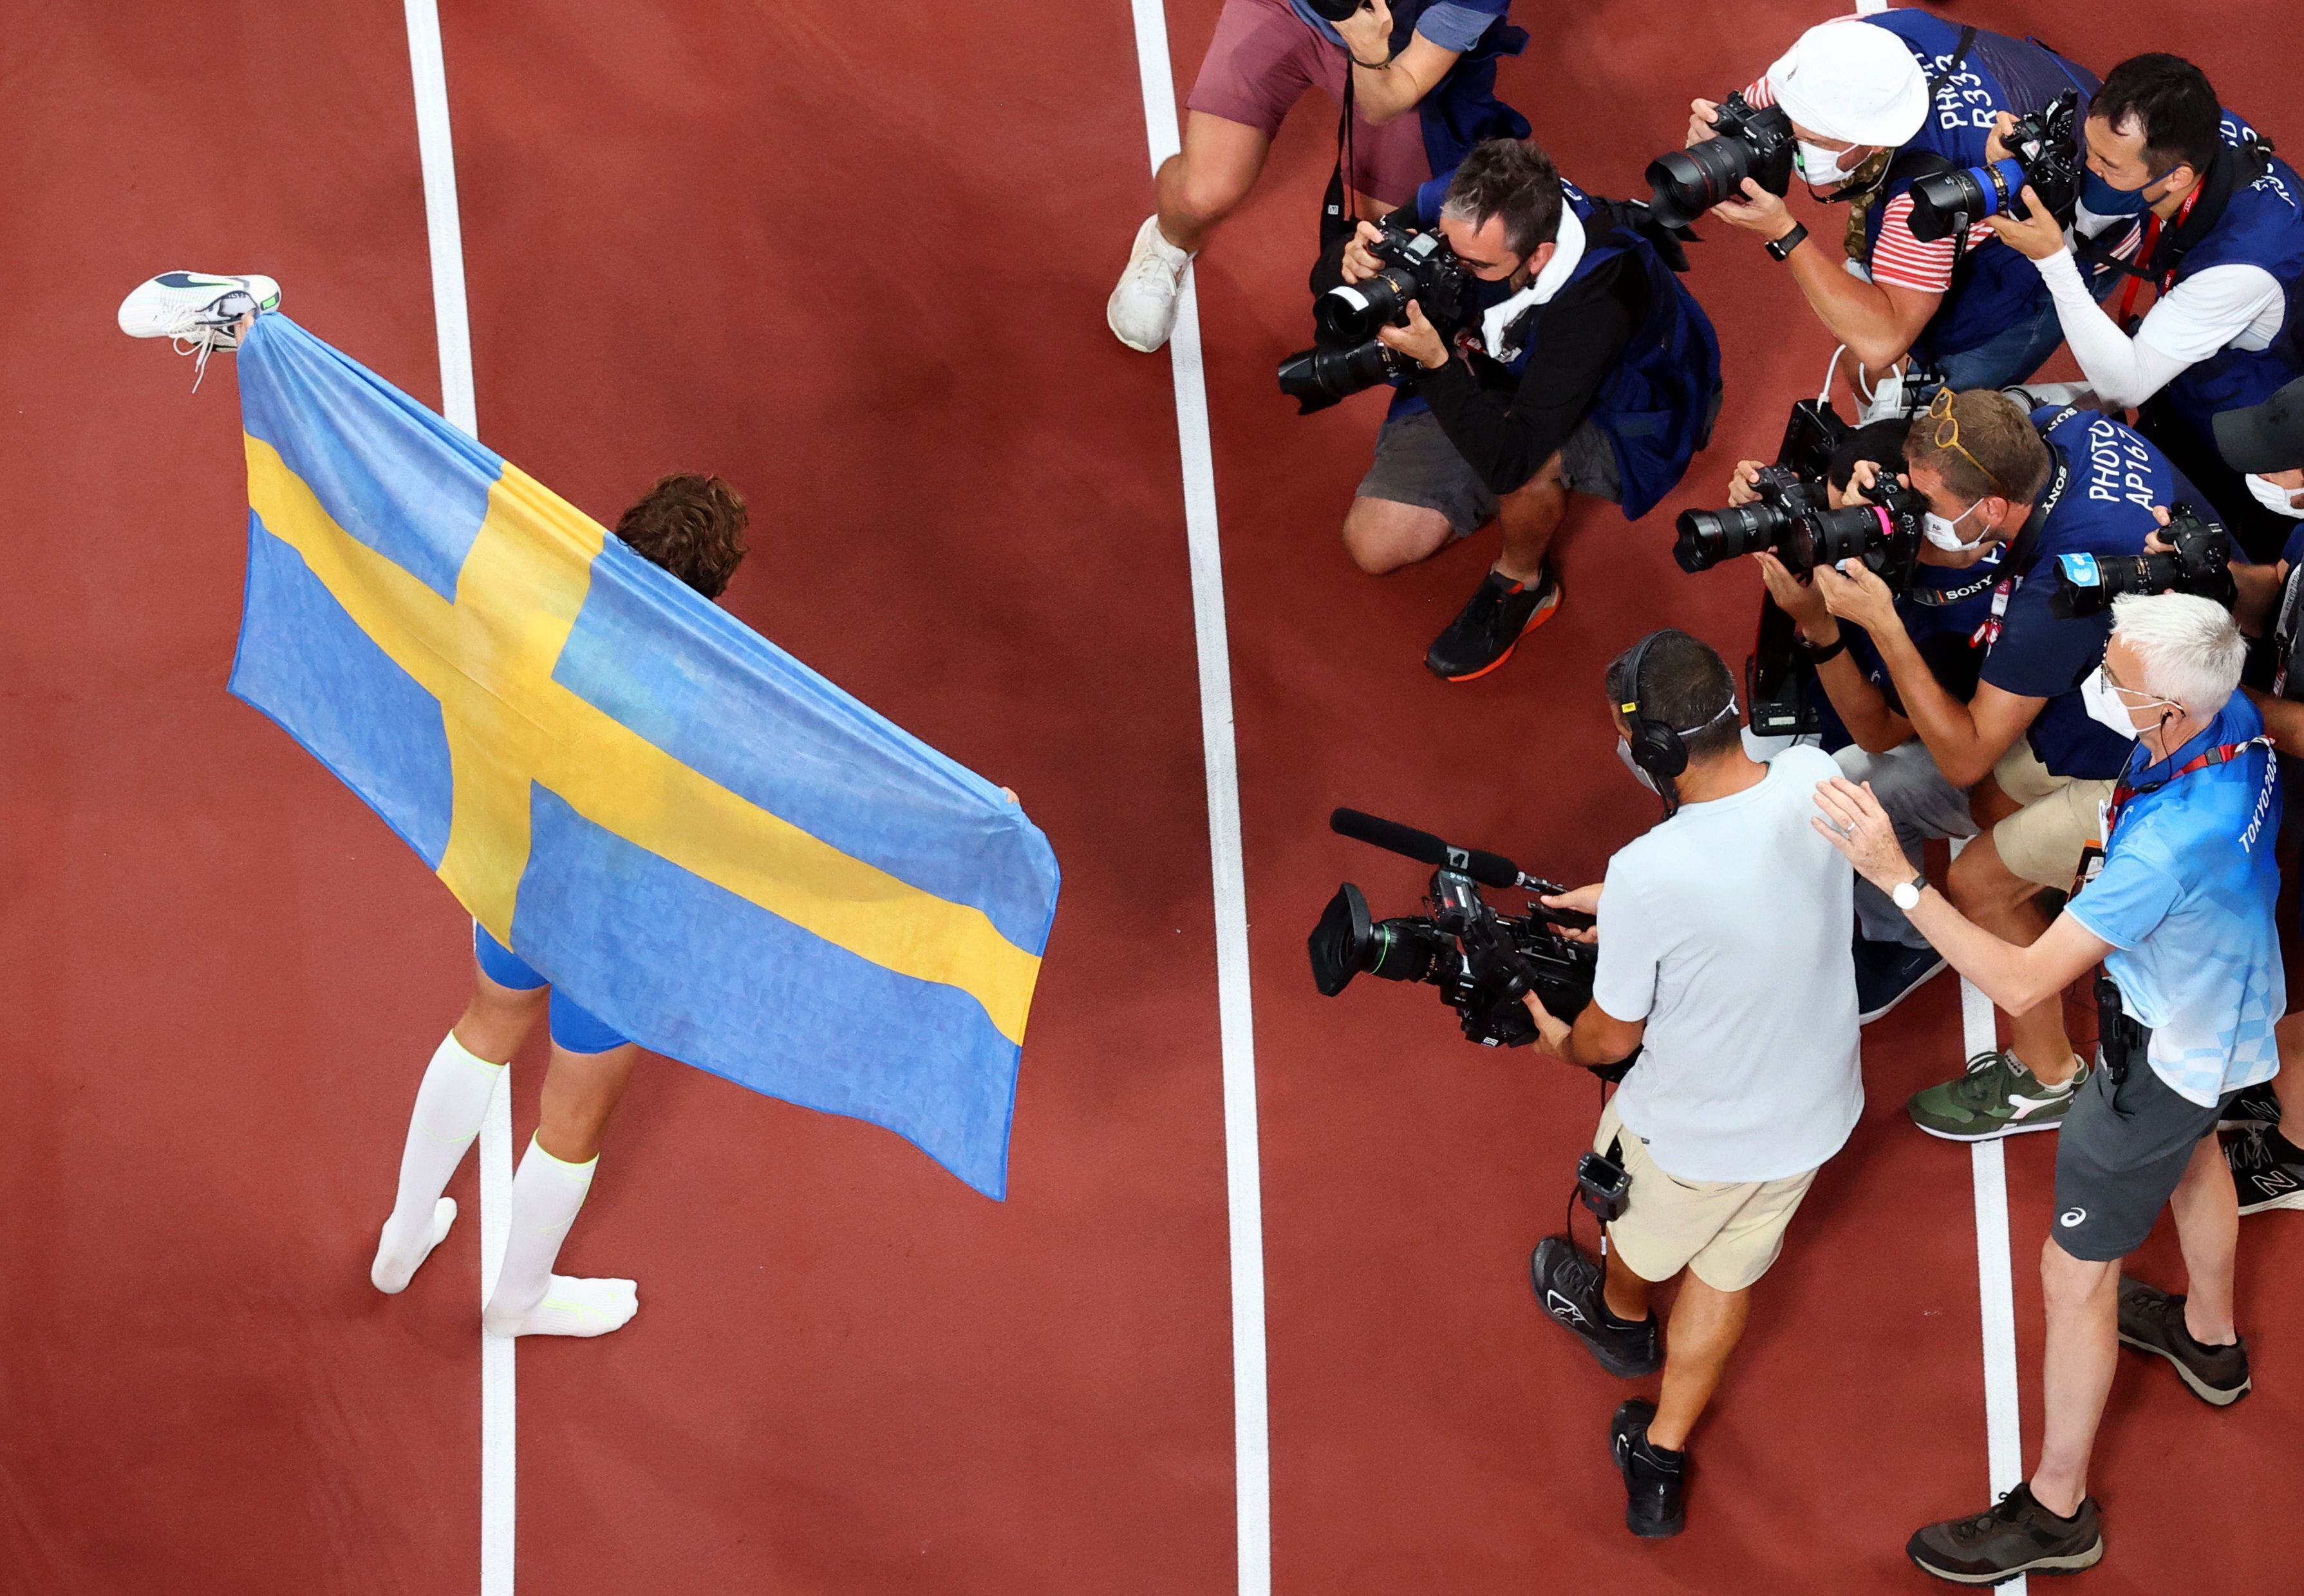 Duplantis, nacido en Estados Unidos pero de madre sueca, compitió representando al país europeo y lució su bandera tras ganar la competencia (REUTERS/Athit Perawongmetha)